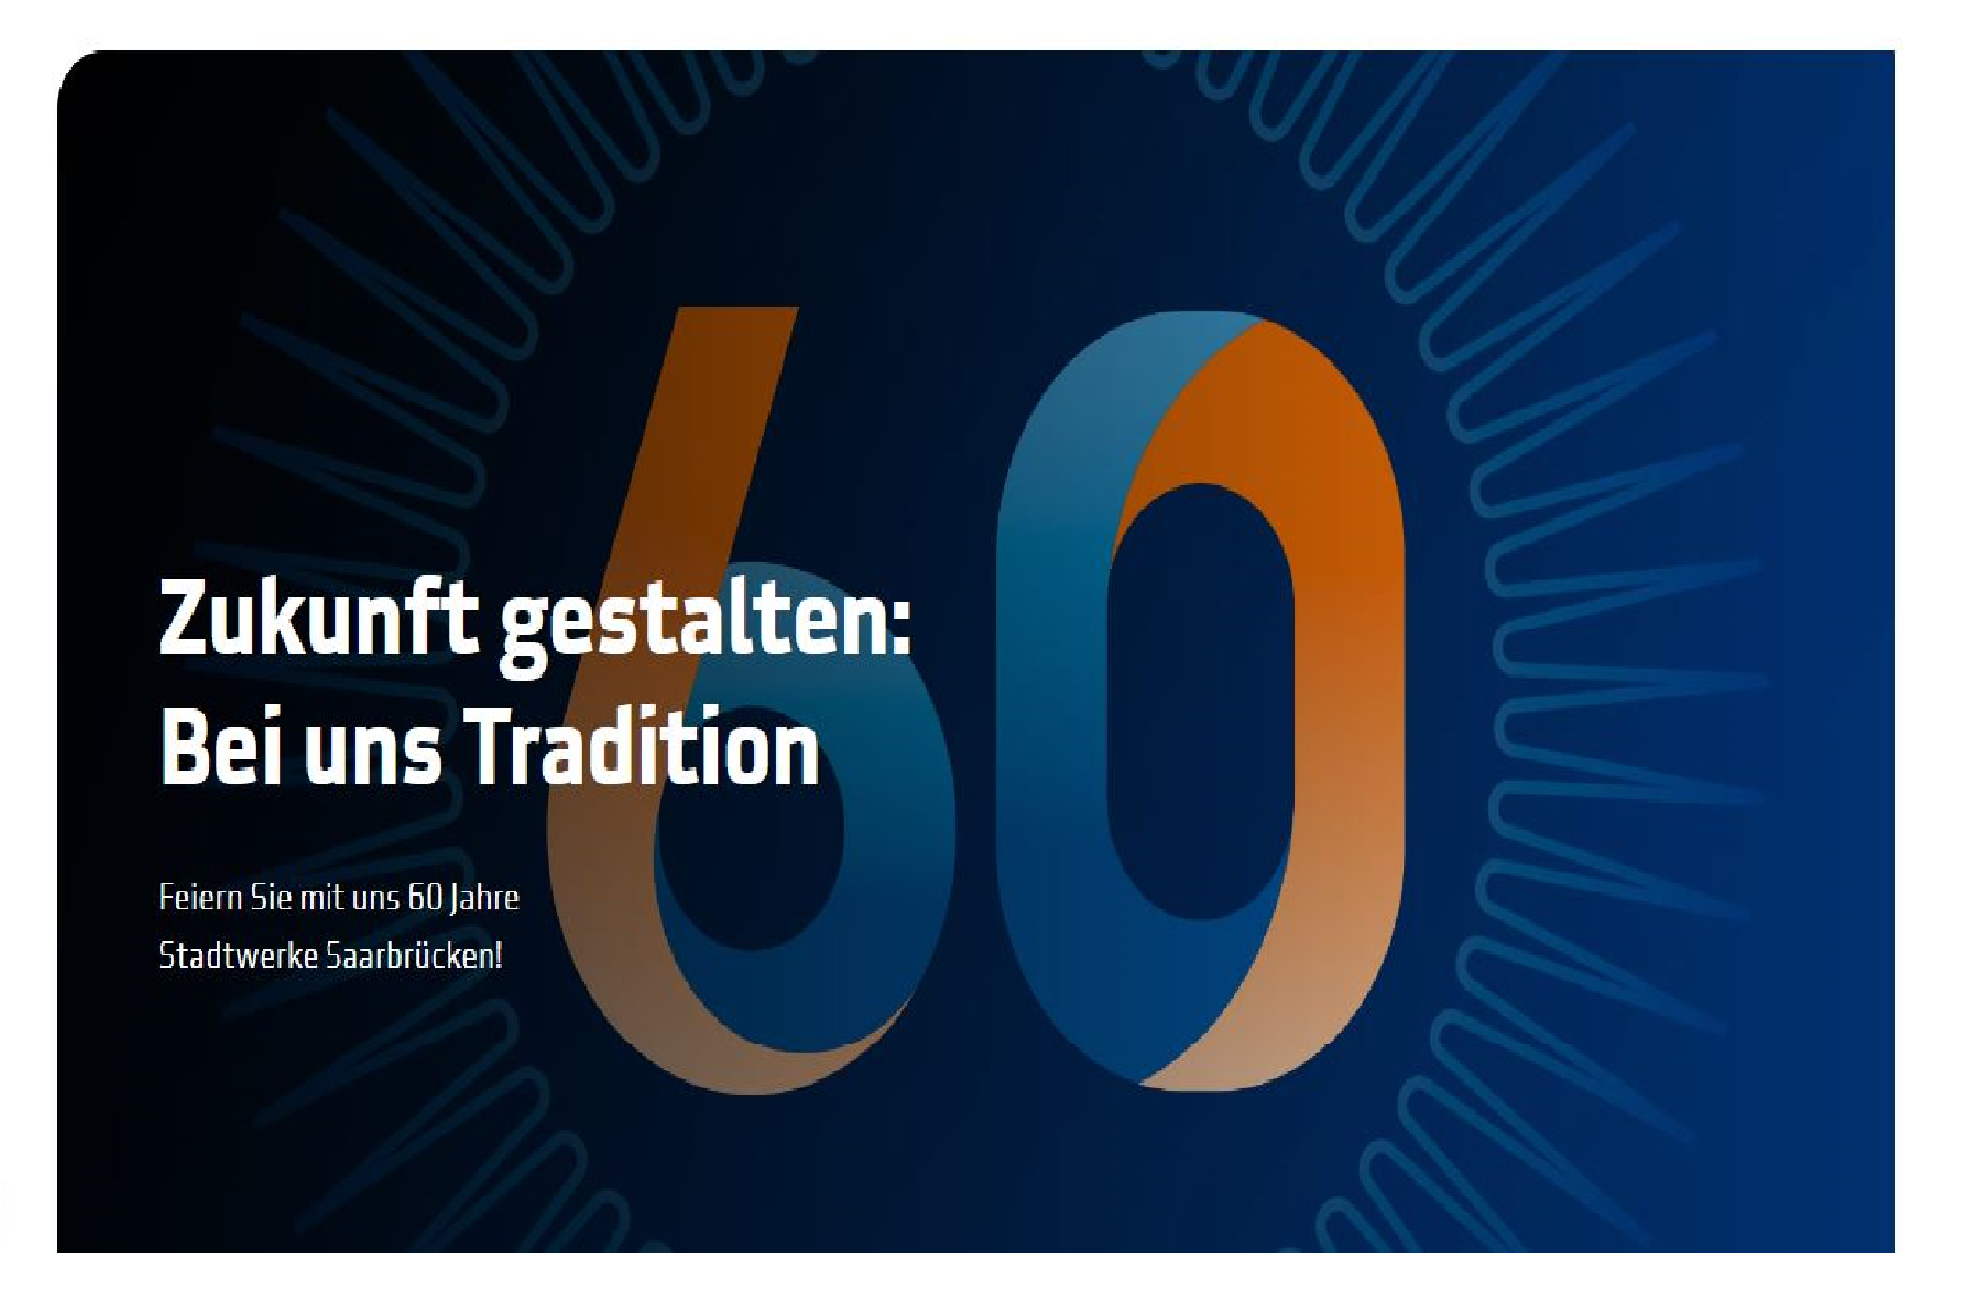 60 Jahre Stadtwerke Saarbrücken: Daseinsvorsorge wird im digitalen Raum erlebbar